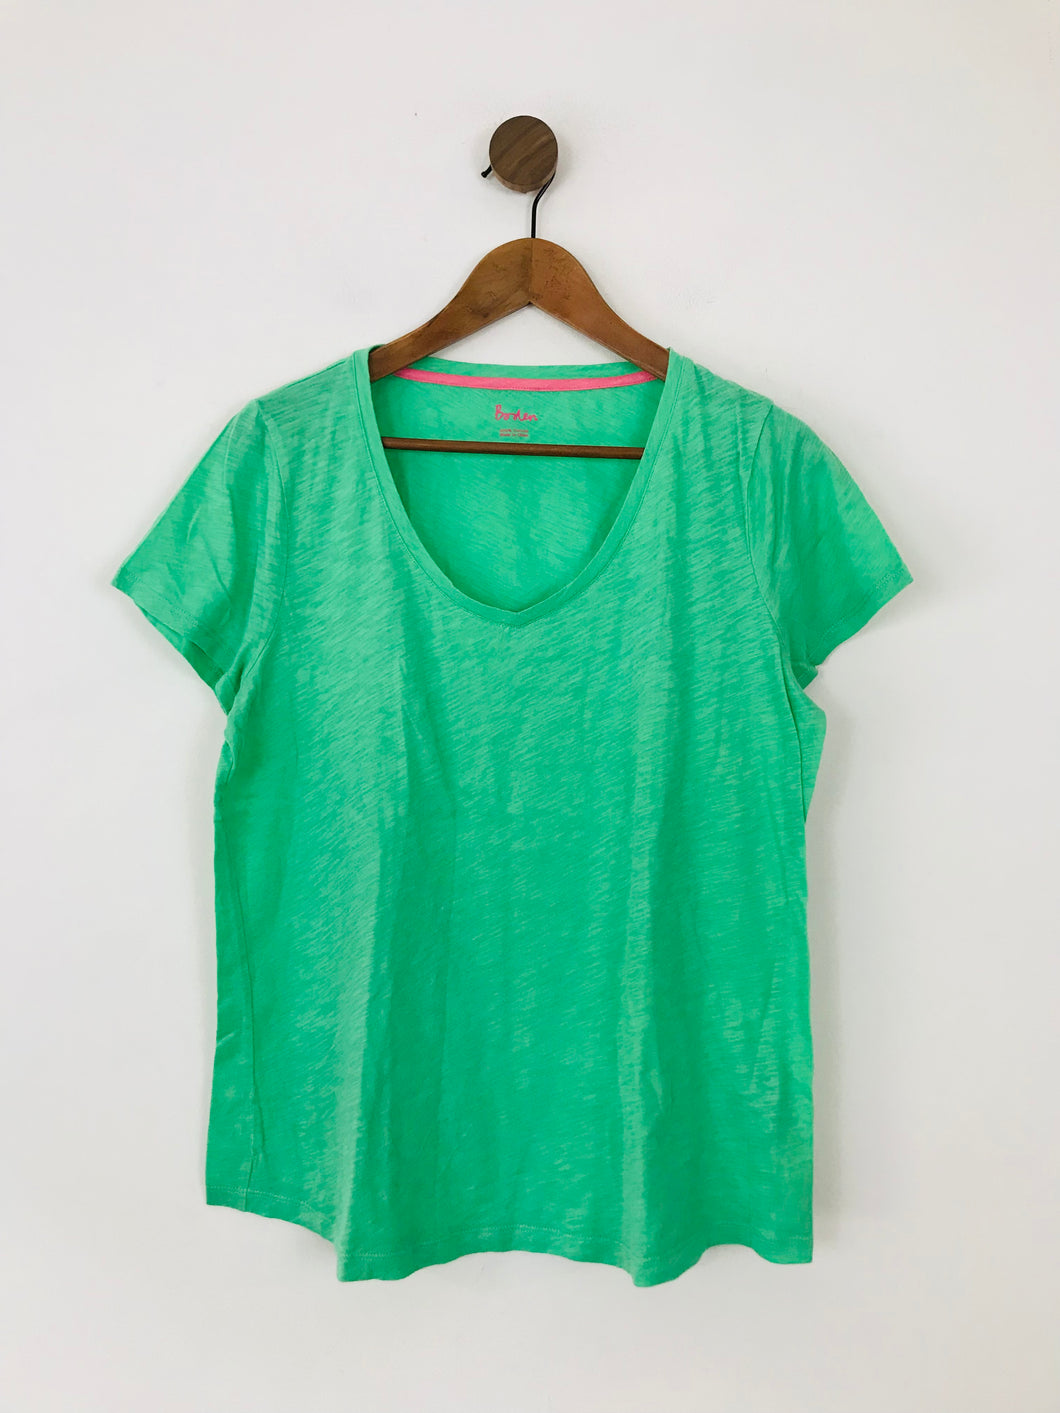 Boden Women's V Neck T-Shirt | M UK10-12 | Green